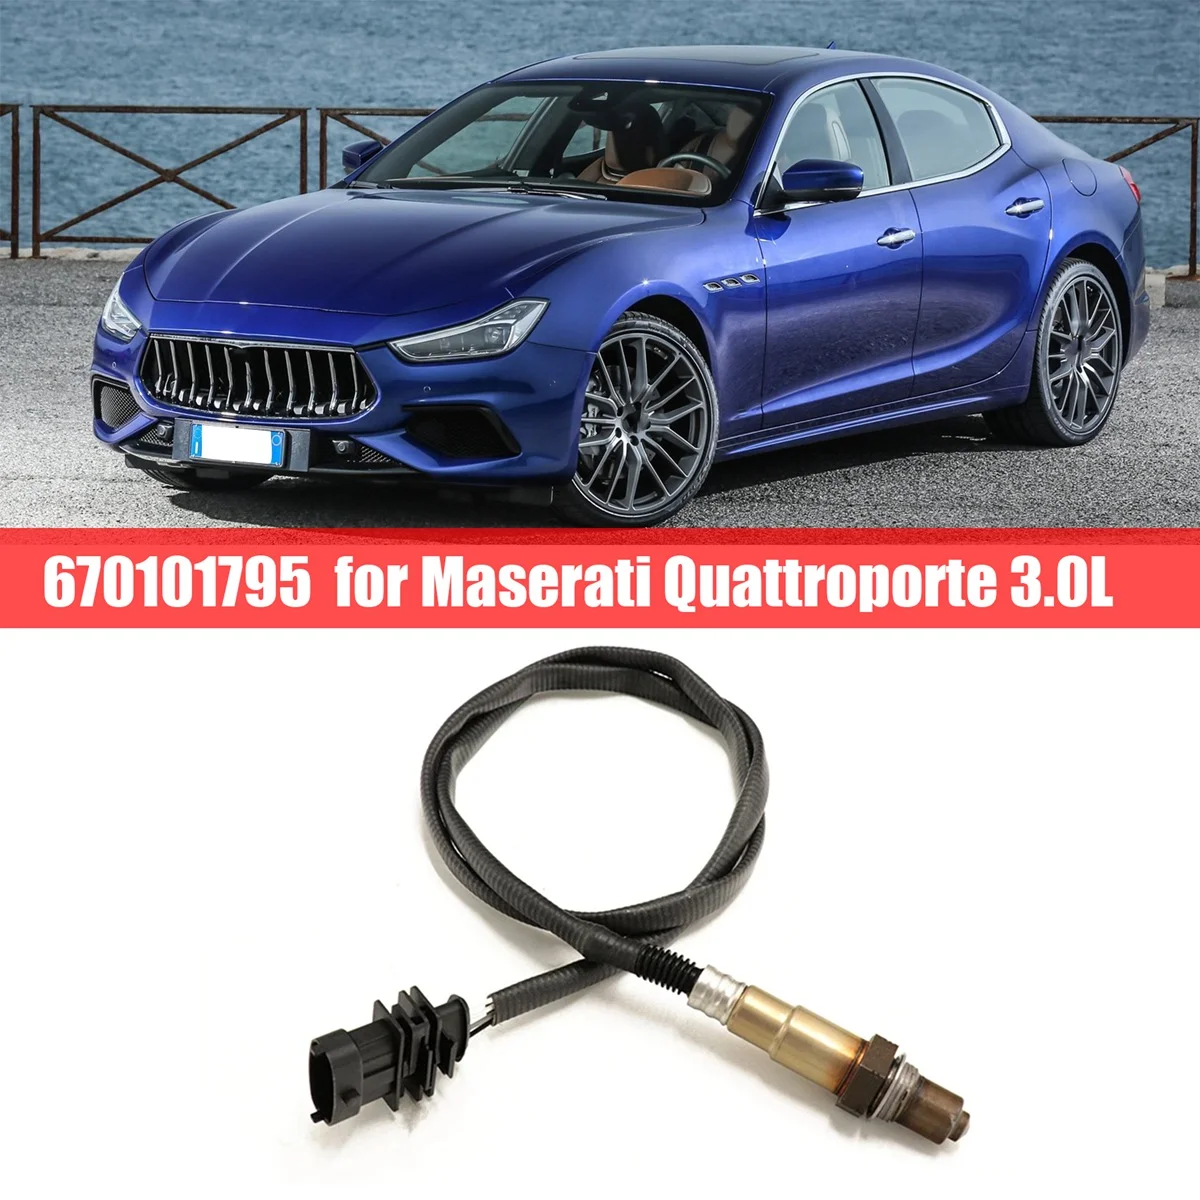 670101795 Кислородный датчик соотношения воздуха и топлива кислородный датчик автомобиля для Maserati Quattroporte 3.0L Изображение 3